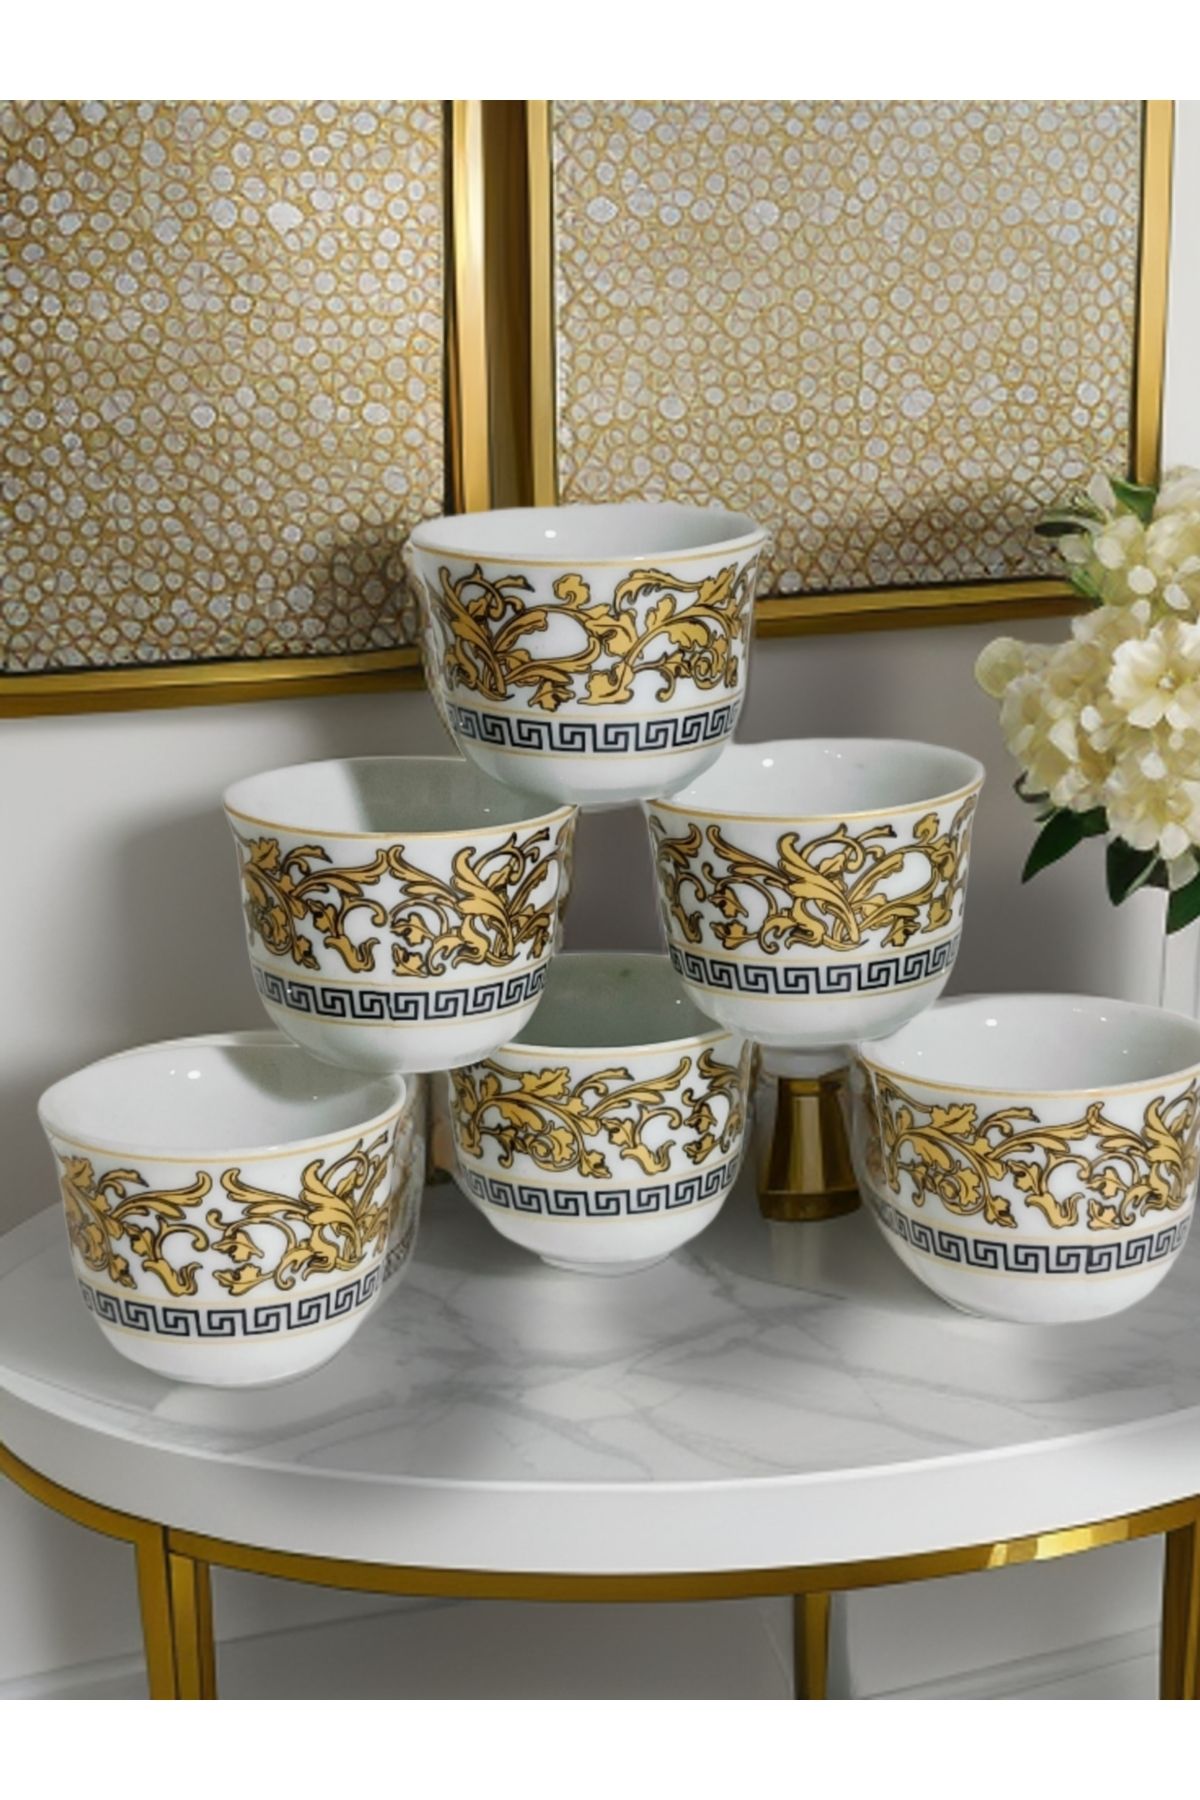 SAMSA Yaldız Zincir Desenli Mırra Kulpsuz Fincan Porselen Takımı 6 Adet Mırra Cup Porcelain 6 Pieces